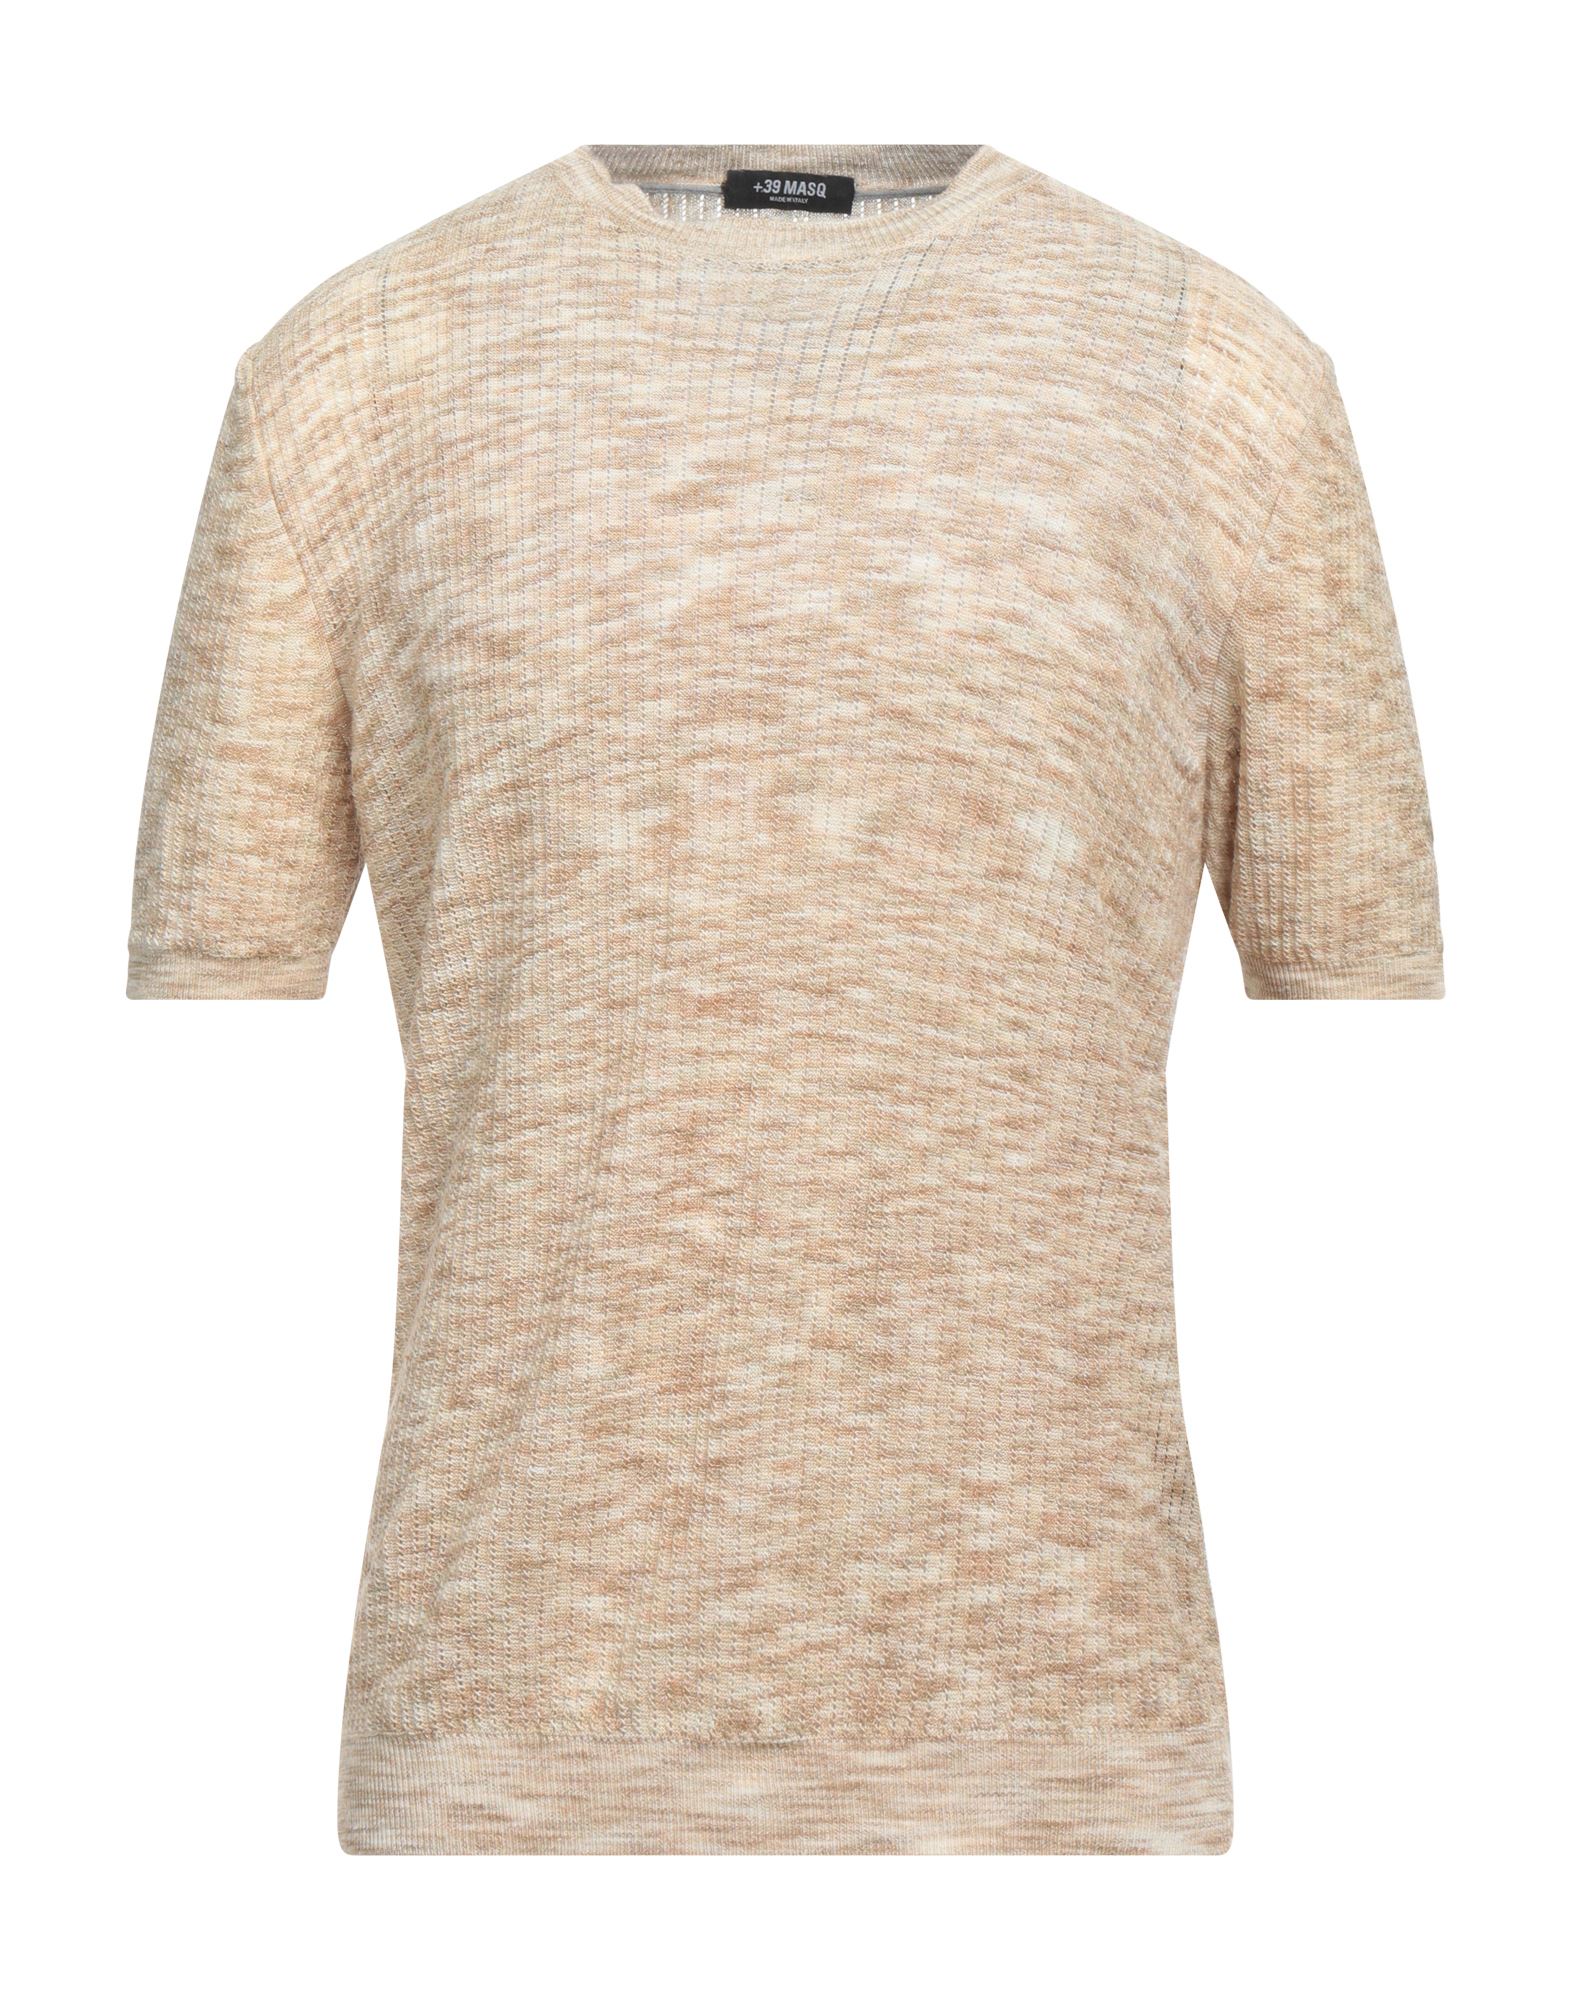 Shop +39 Masq Man Sweater Sand Size S Linen In Beige